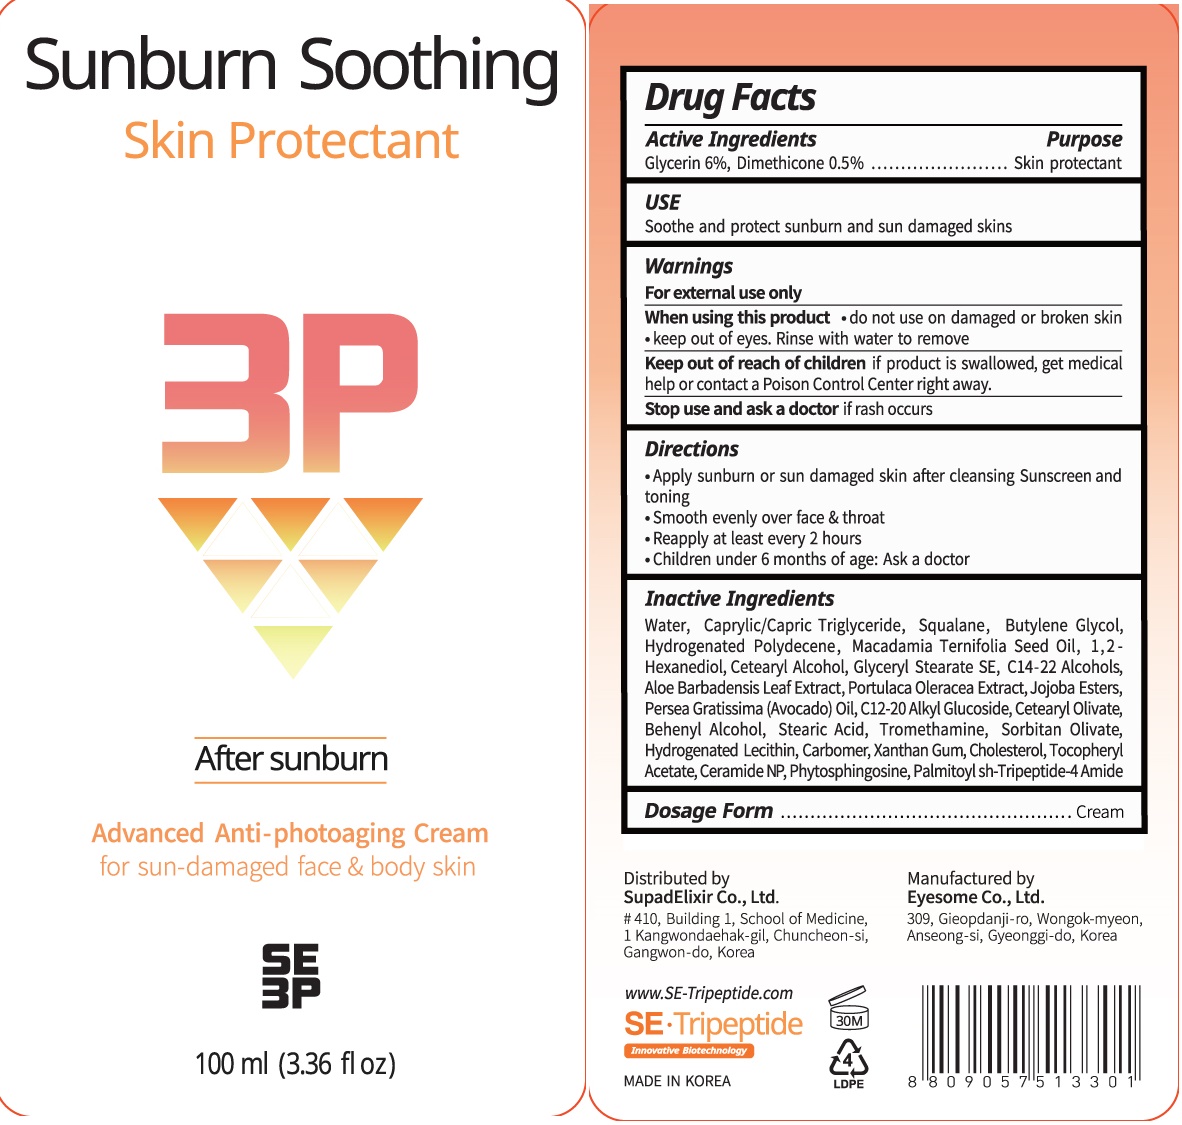 Sunburn Soothing